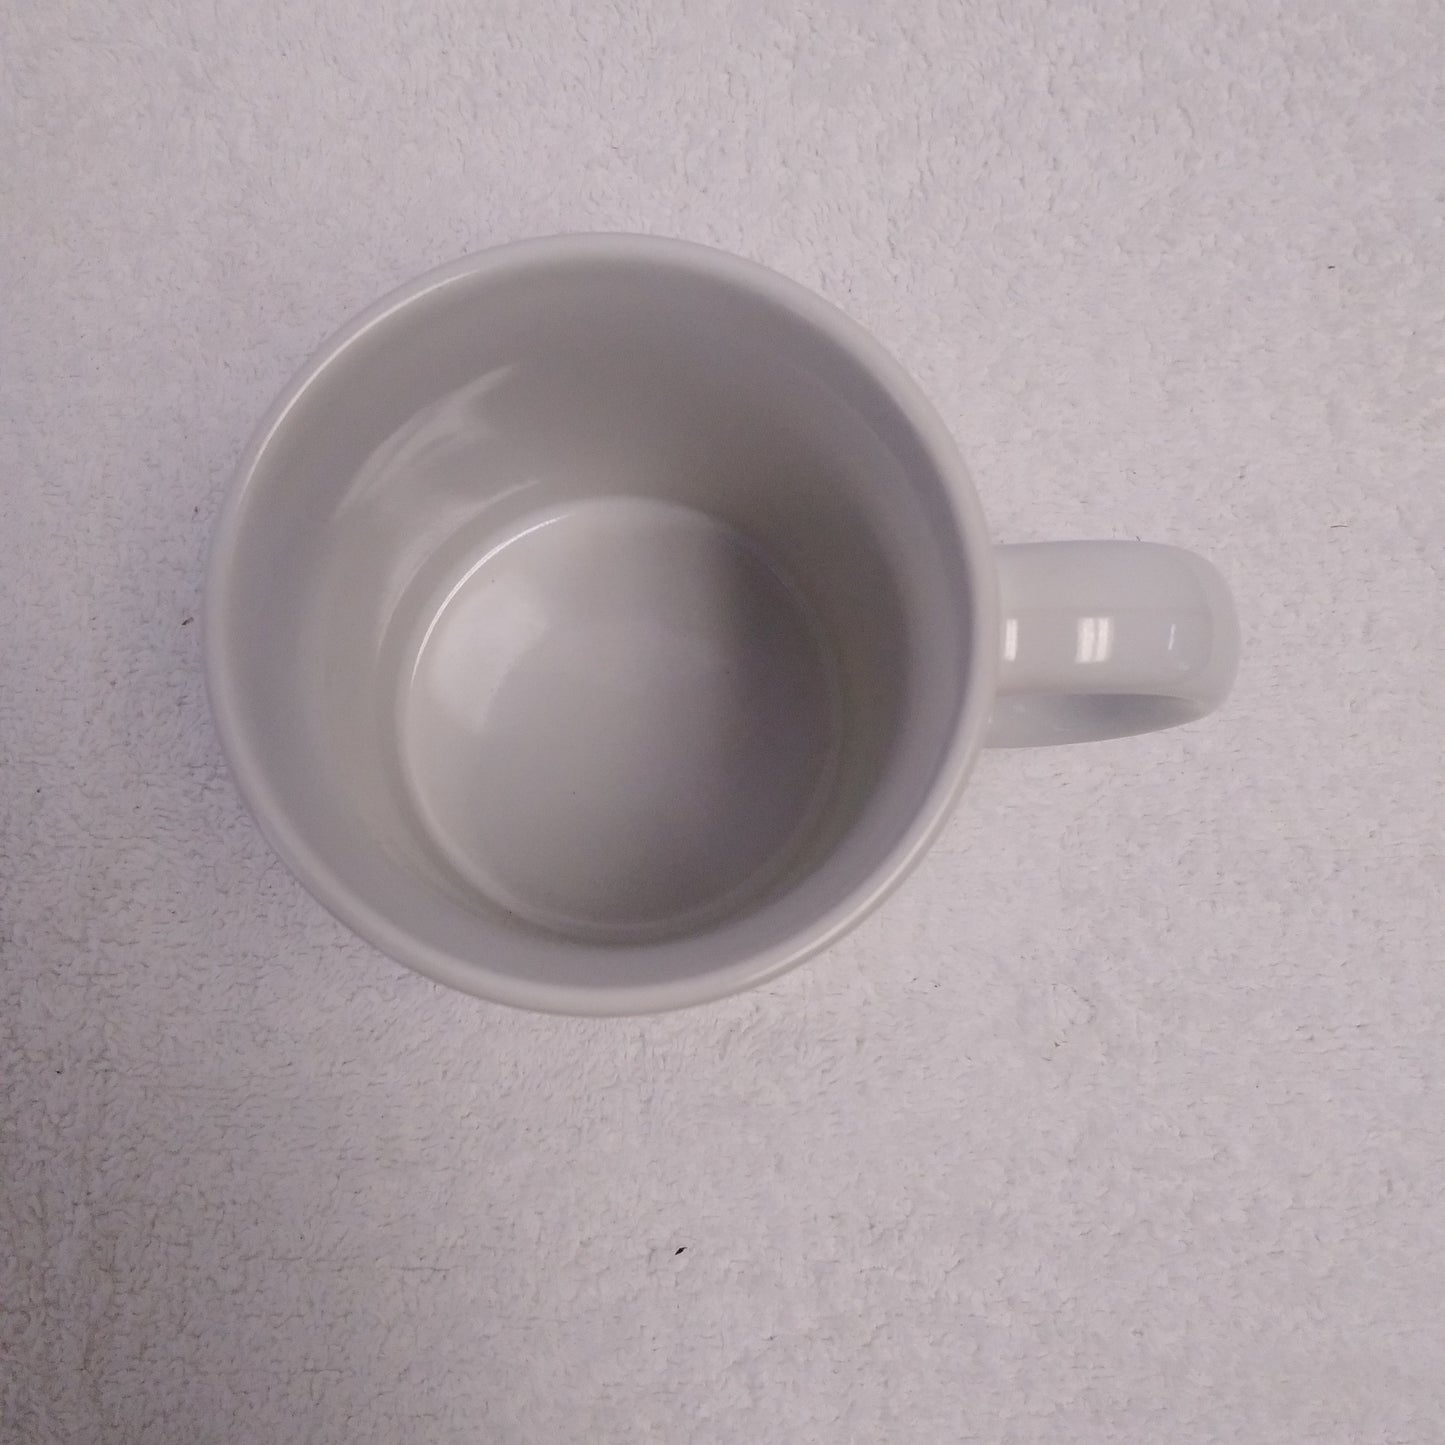 NIB - Employee Appreciation Coffee Mug & 3.9oz Scented Candle